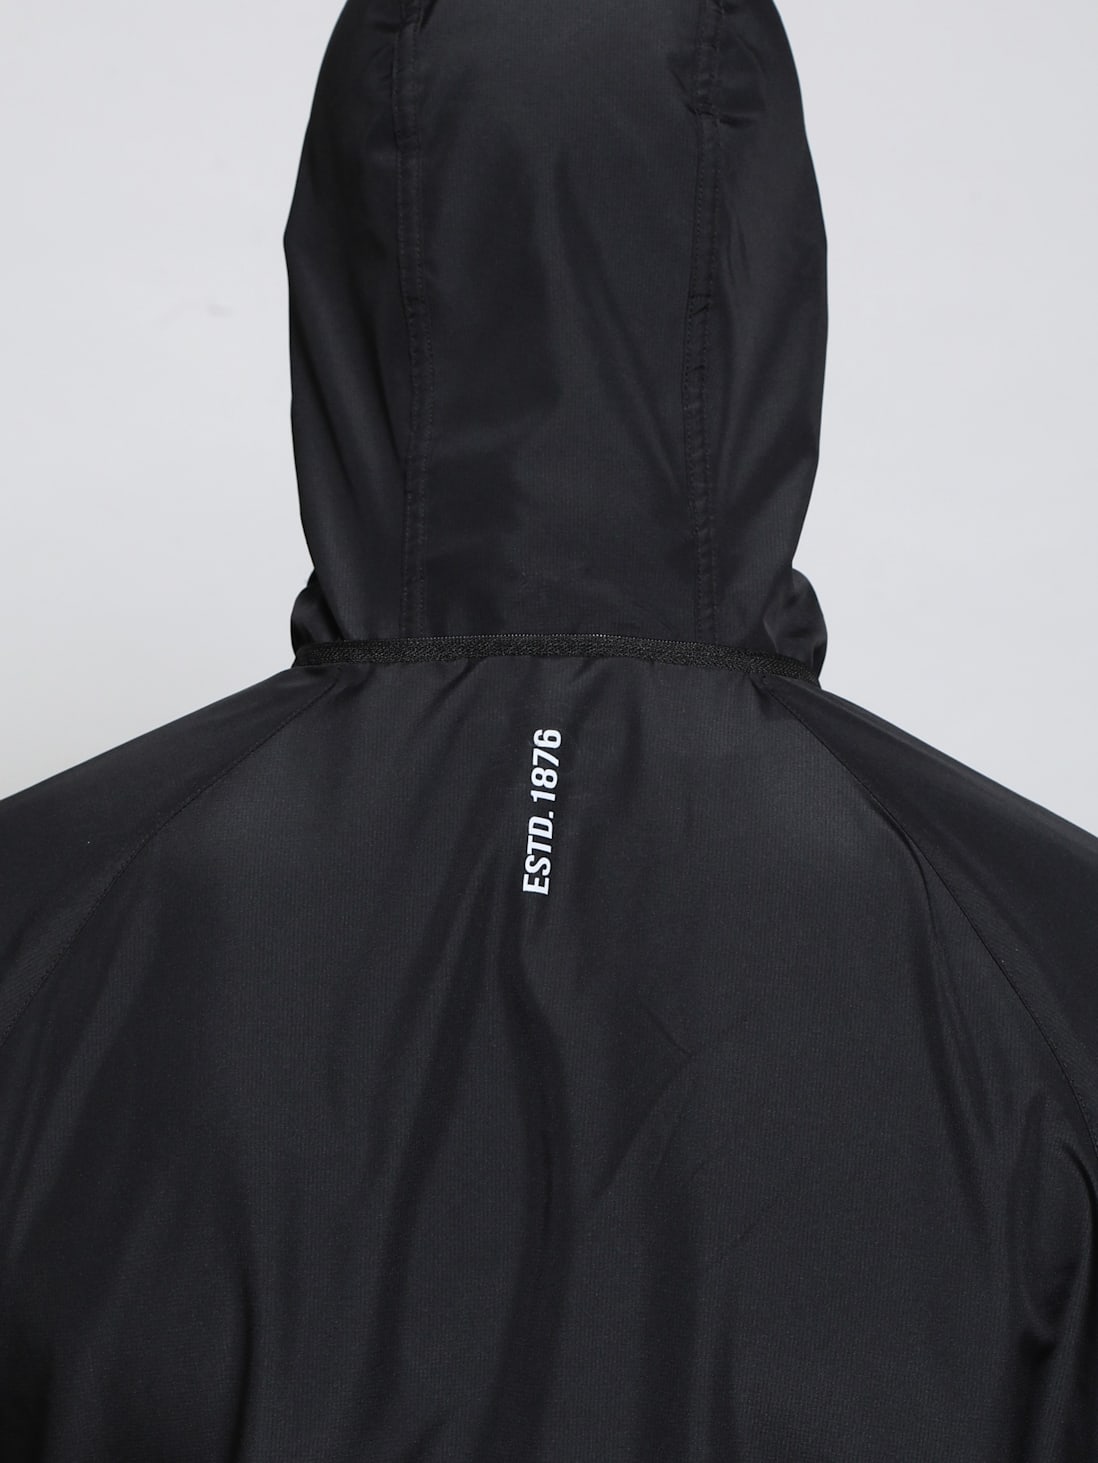 Buy Men's Microfiber Fabric Water Resistant Convertible Hoodie Jacket ...